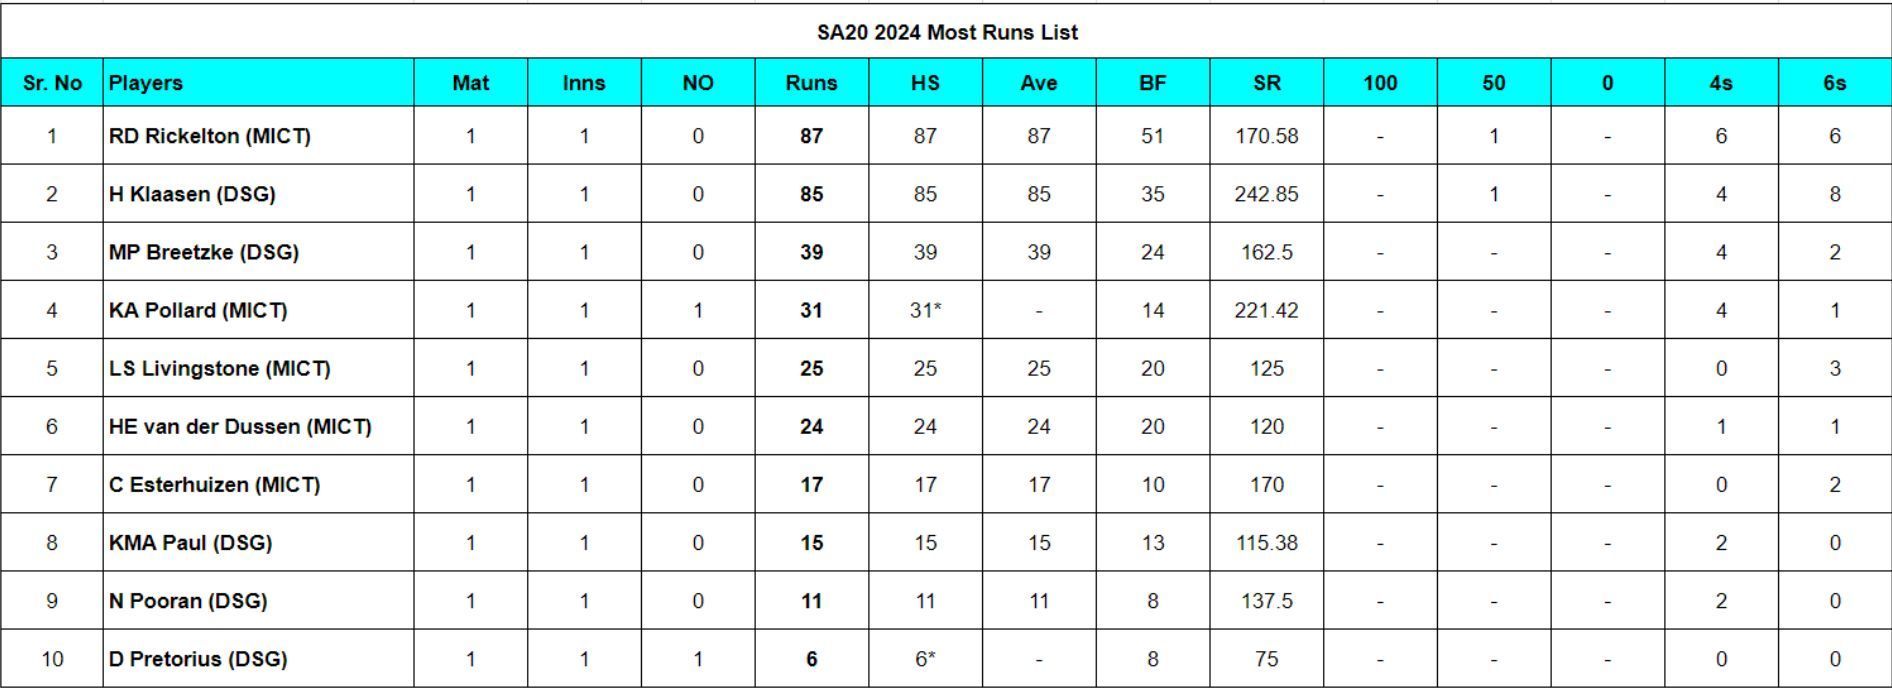 SA20 2024 Most Runs List